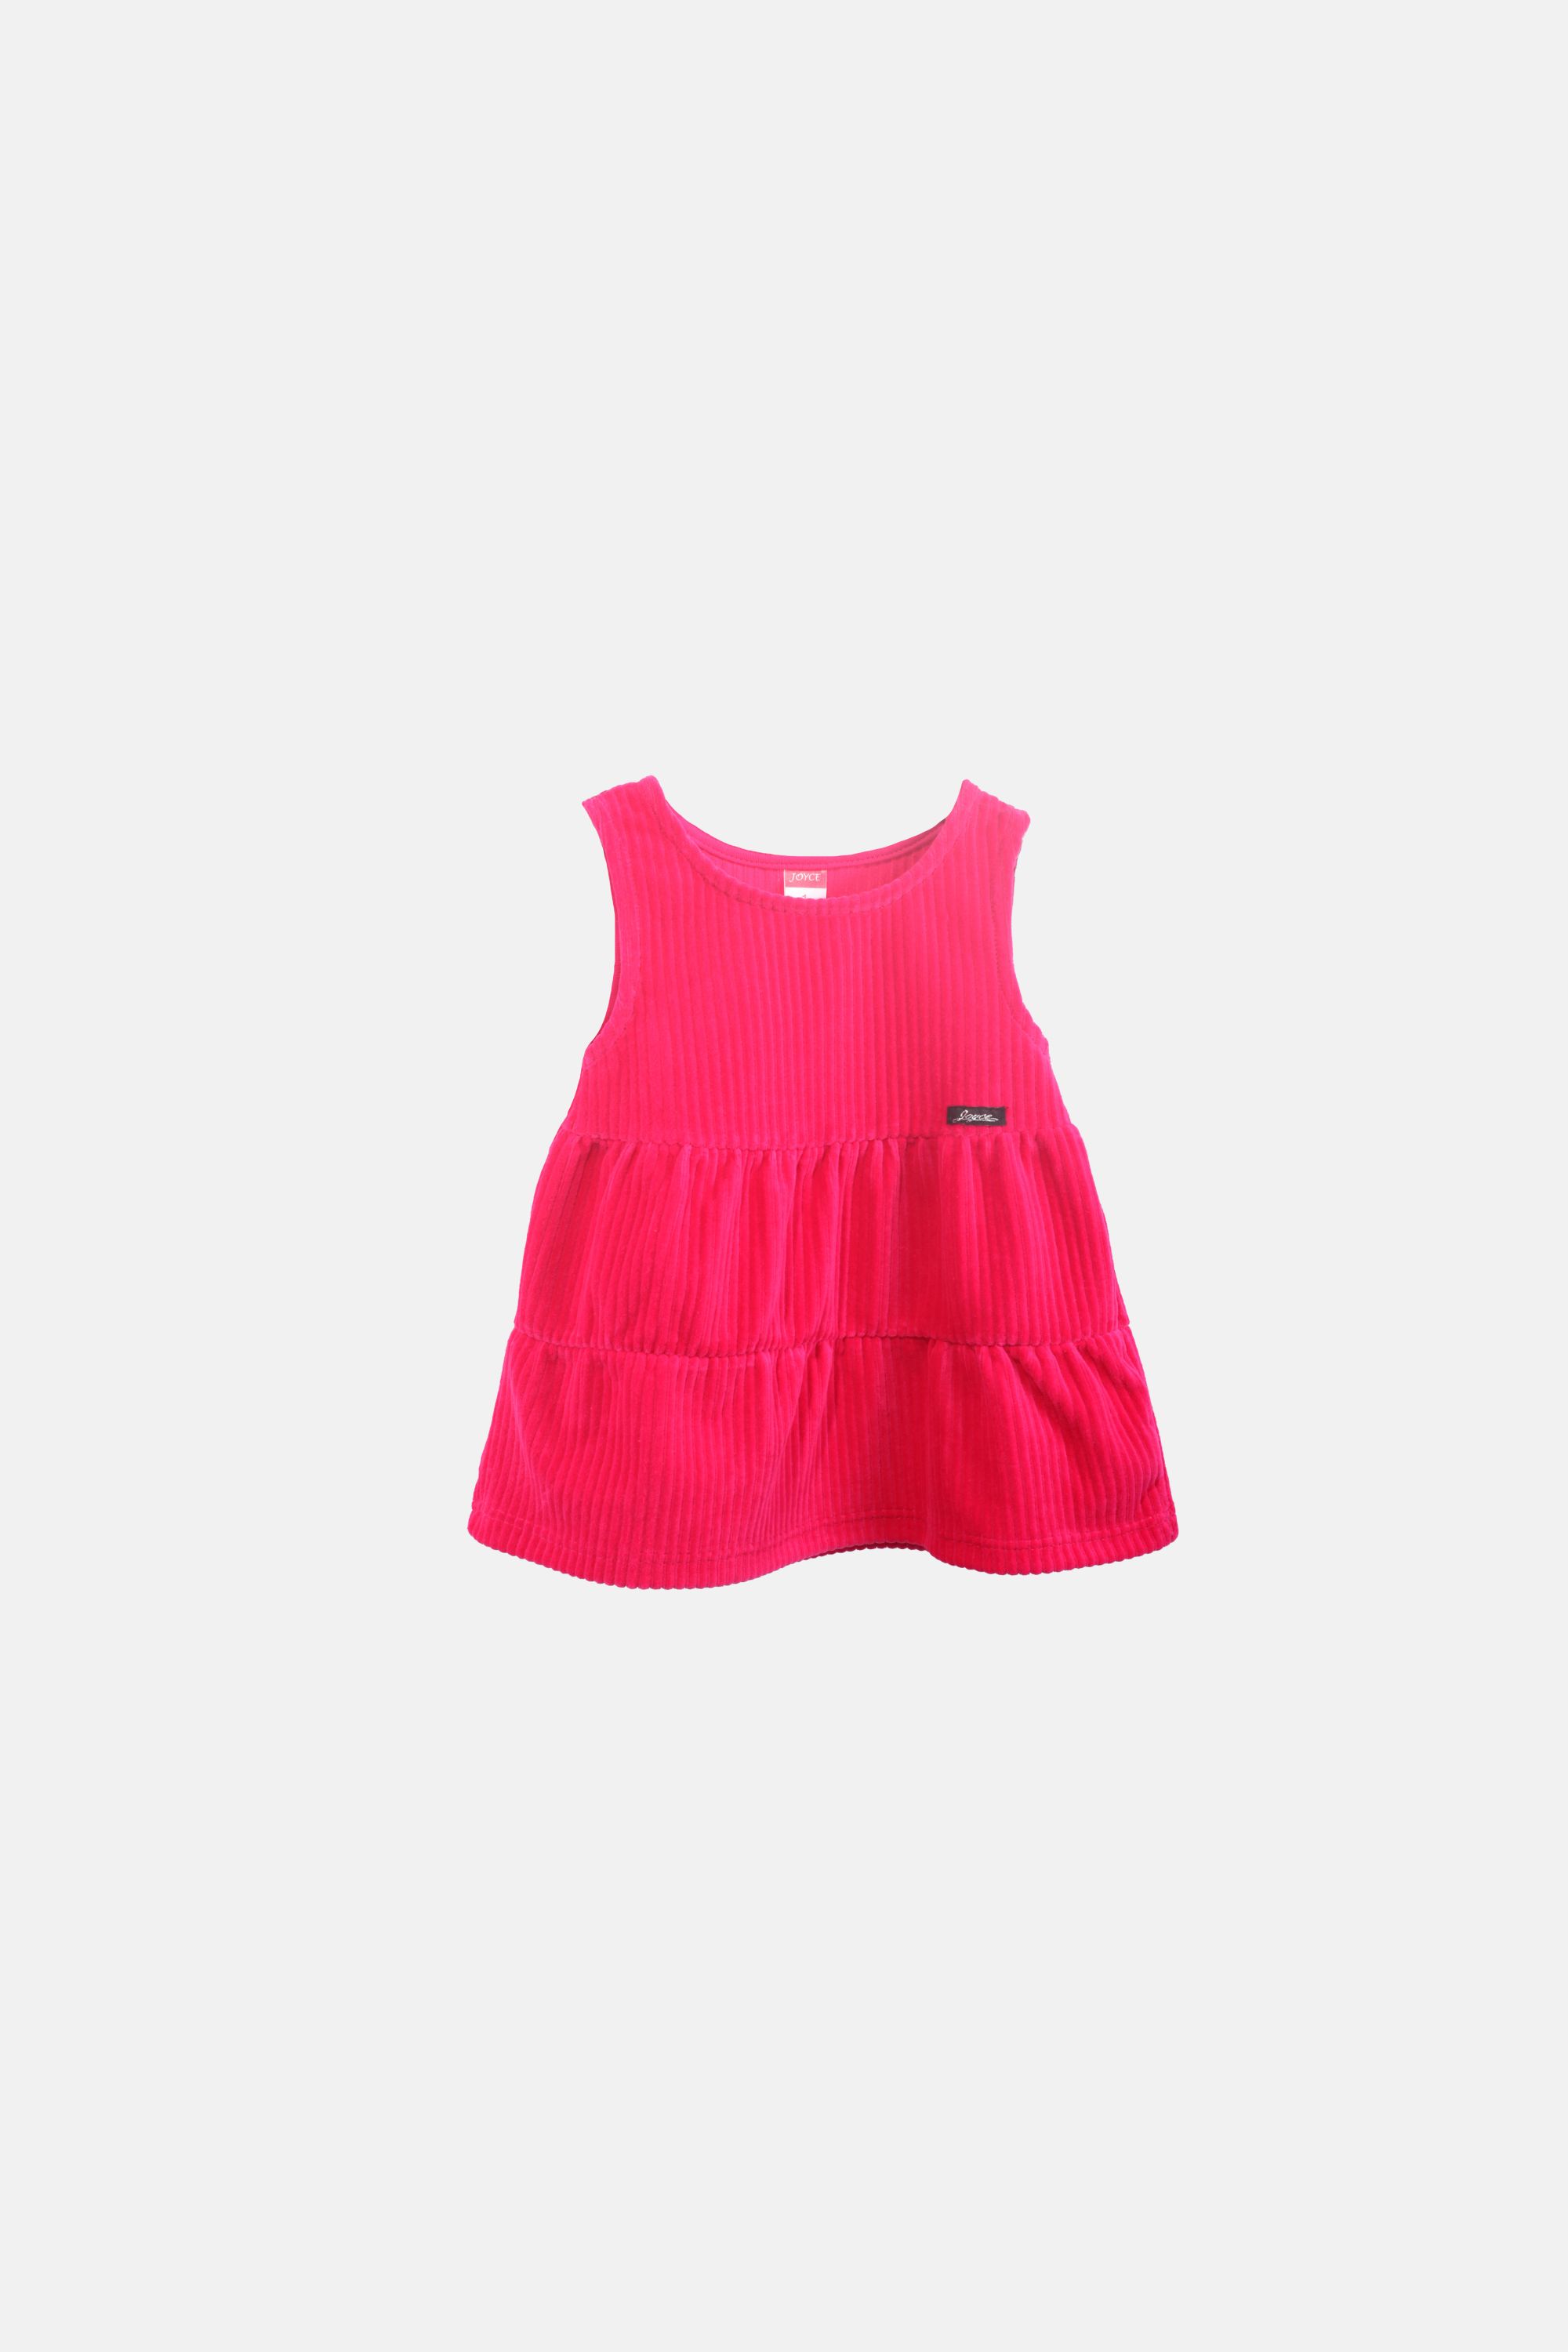 Dívčí velurové šaty "SARAFAN DRESS"/Šedá, růžová, zelená, hnědá Barva: Růžová, Velikost: vel. 1 (78/86 cm)